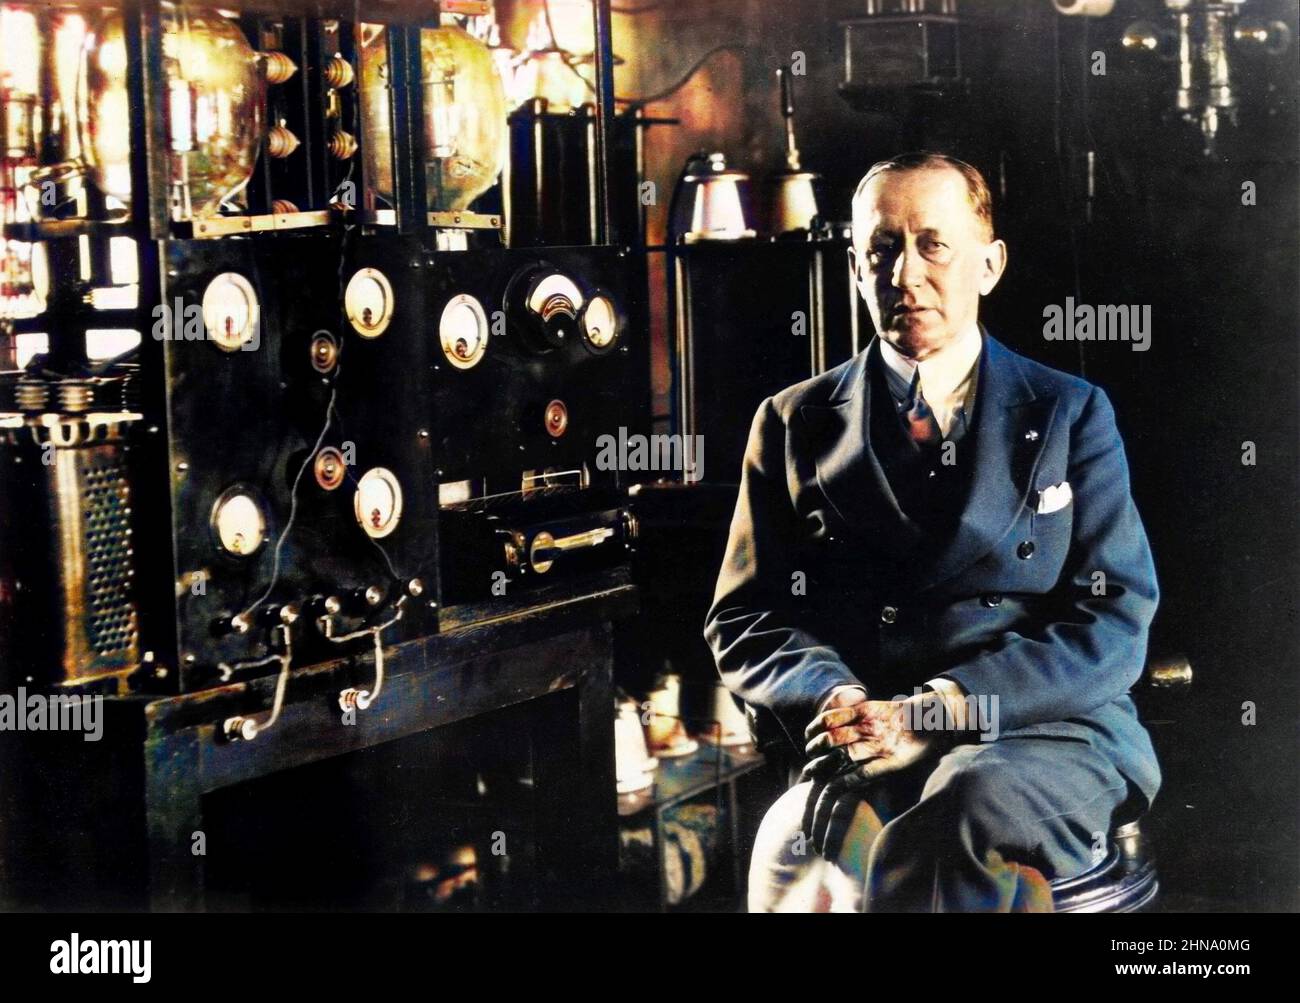 Portrait de l'inventeur italien et pionnier de la radio Guglielmo Marconi assis devant un télégraphe dans le laboratoire à bord de son yacht 'Electra'. Vers 1935 Banque D'Images